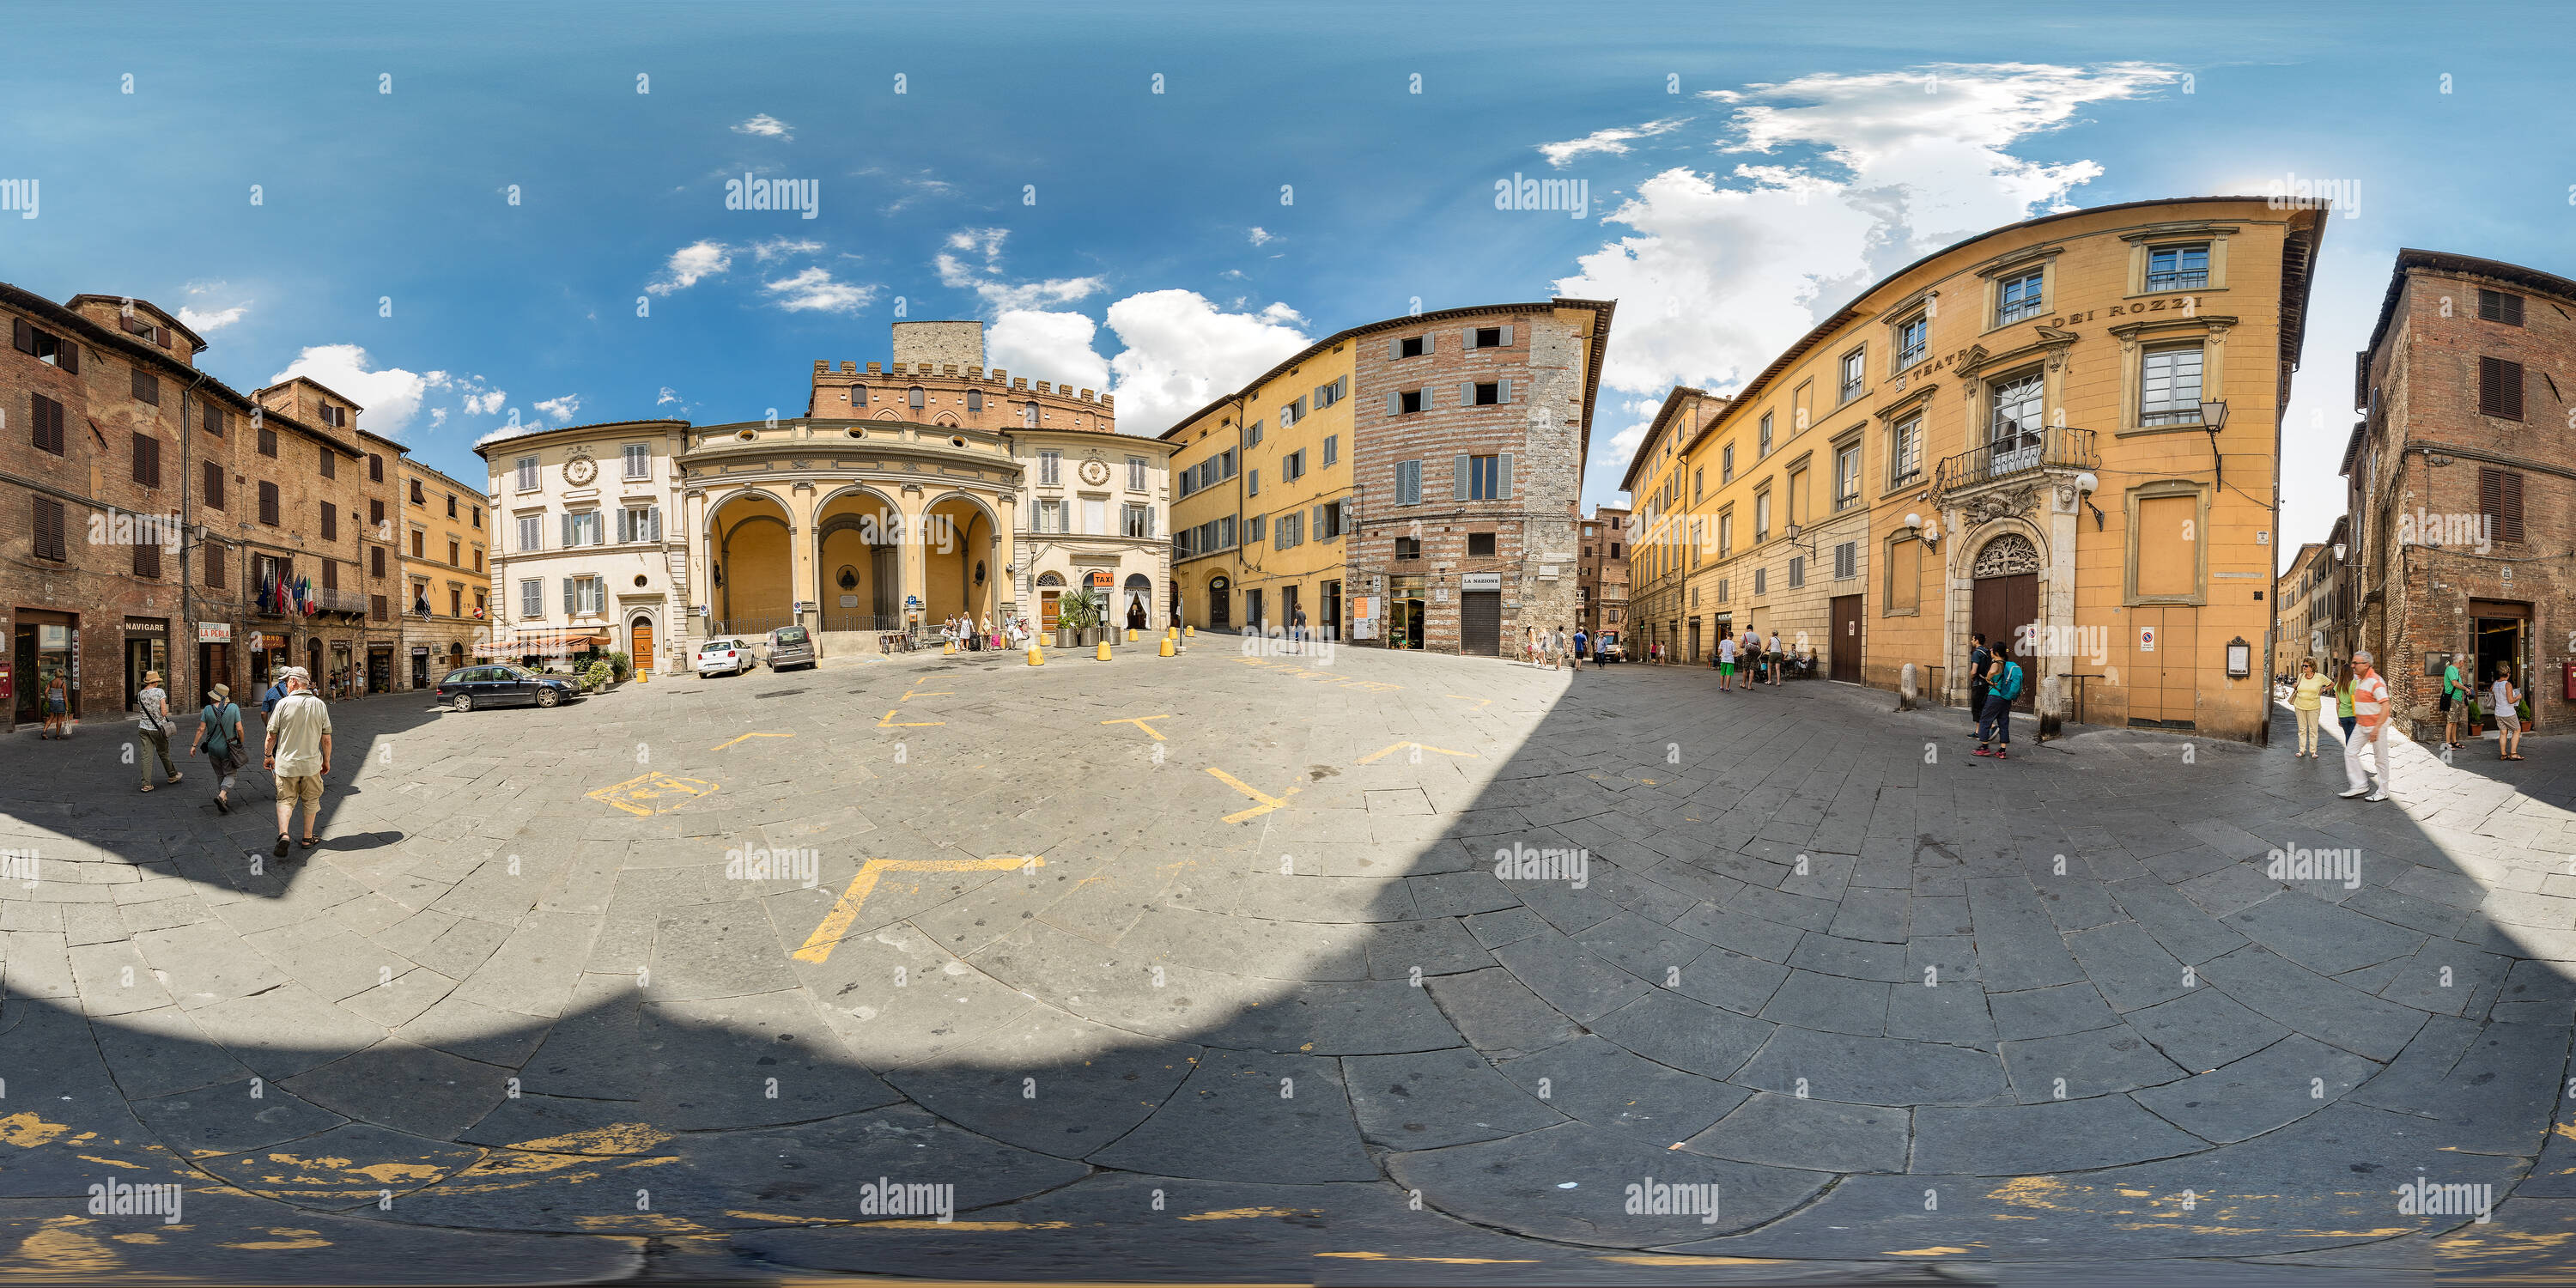 Vue panoramique à 360° de Piazza Indipendenza, Sienne.